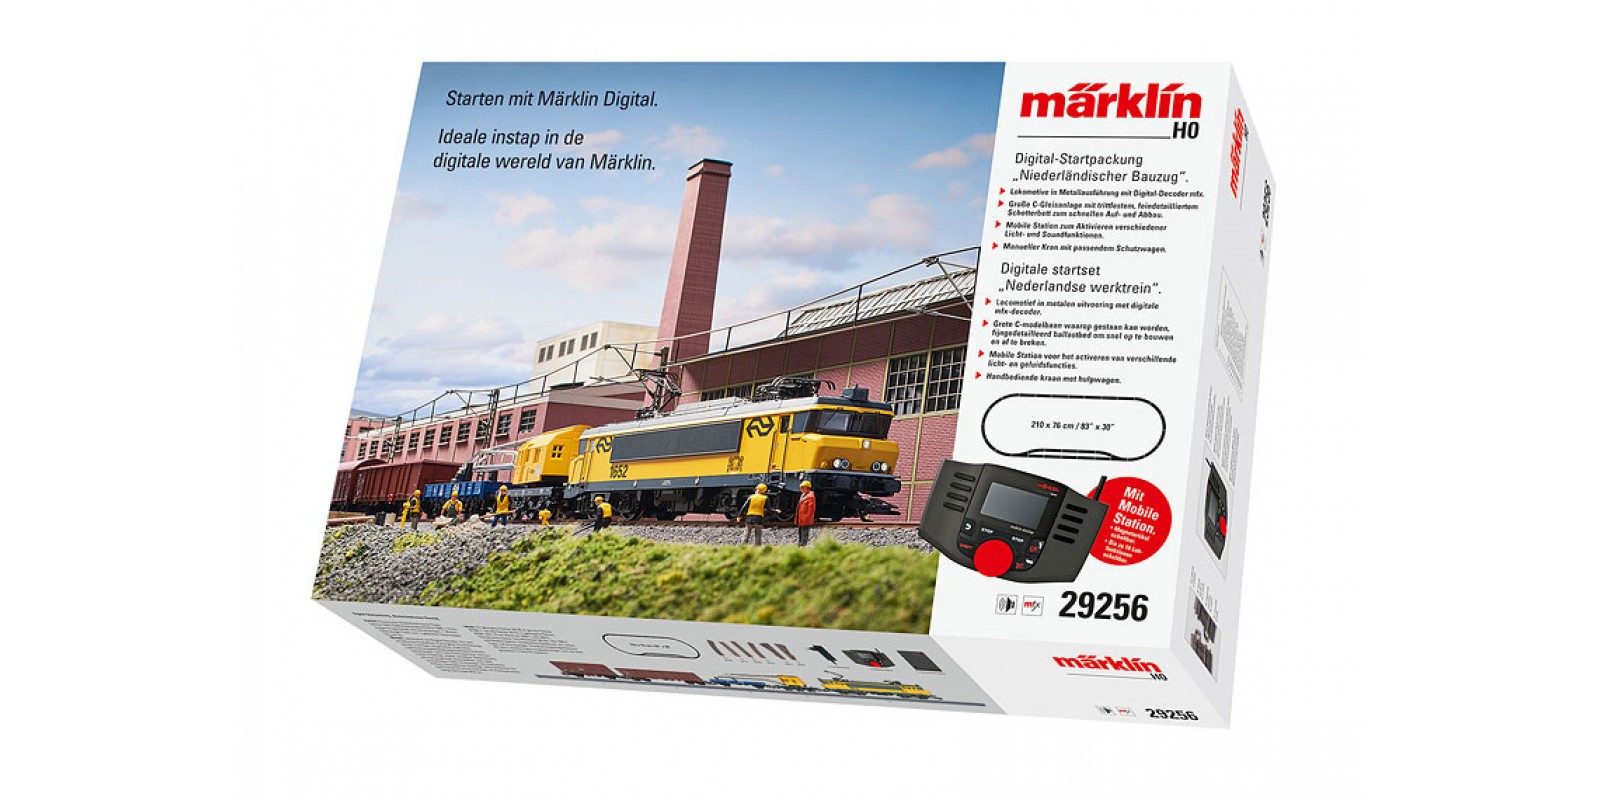 29256 "Dutch Construction Train" Digital Starter Set. 230 Volts